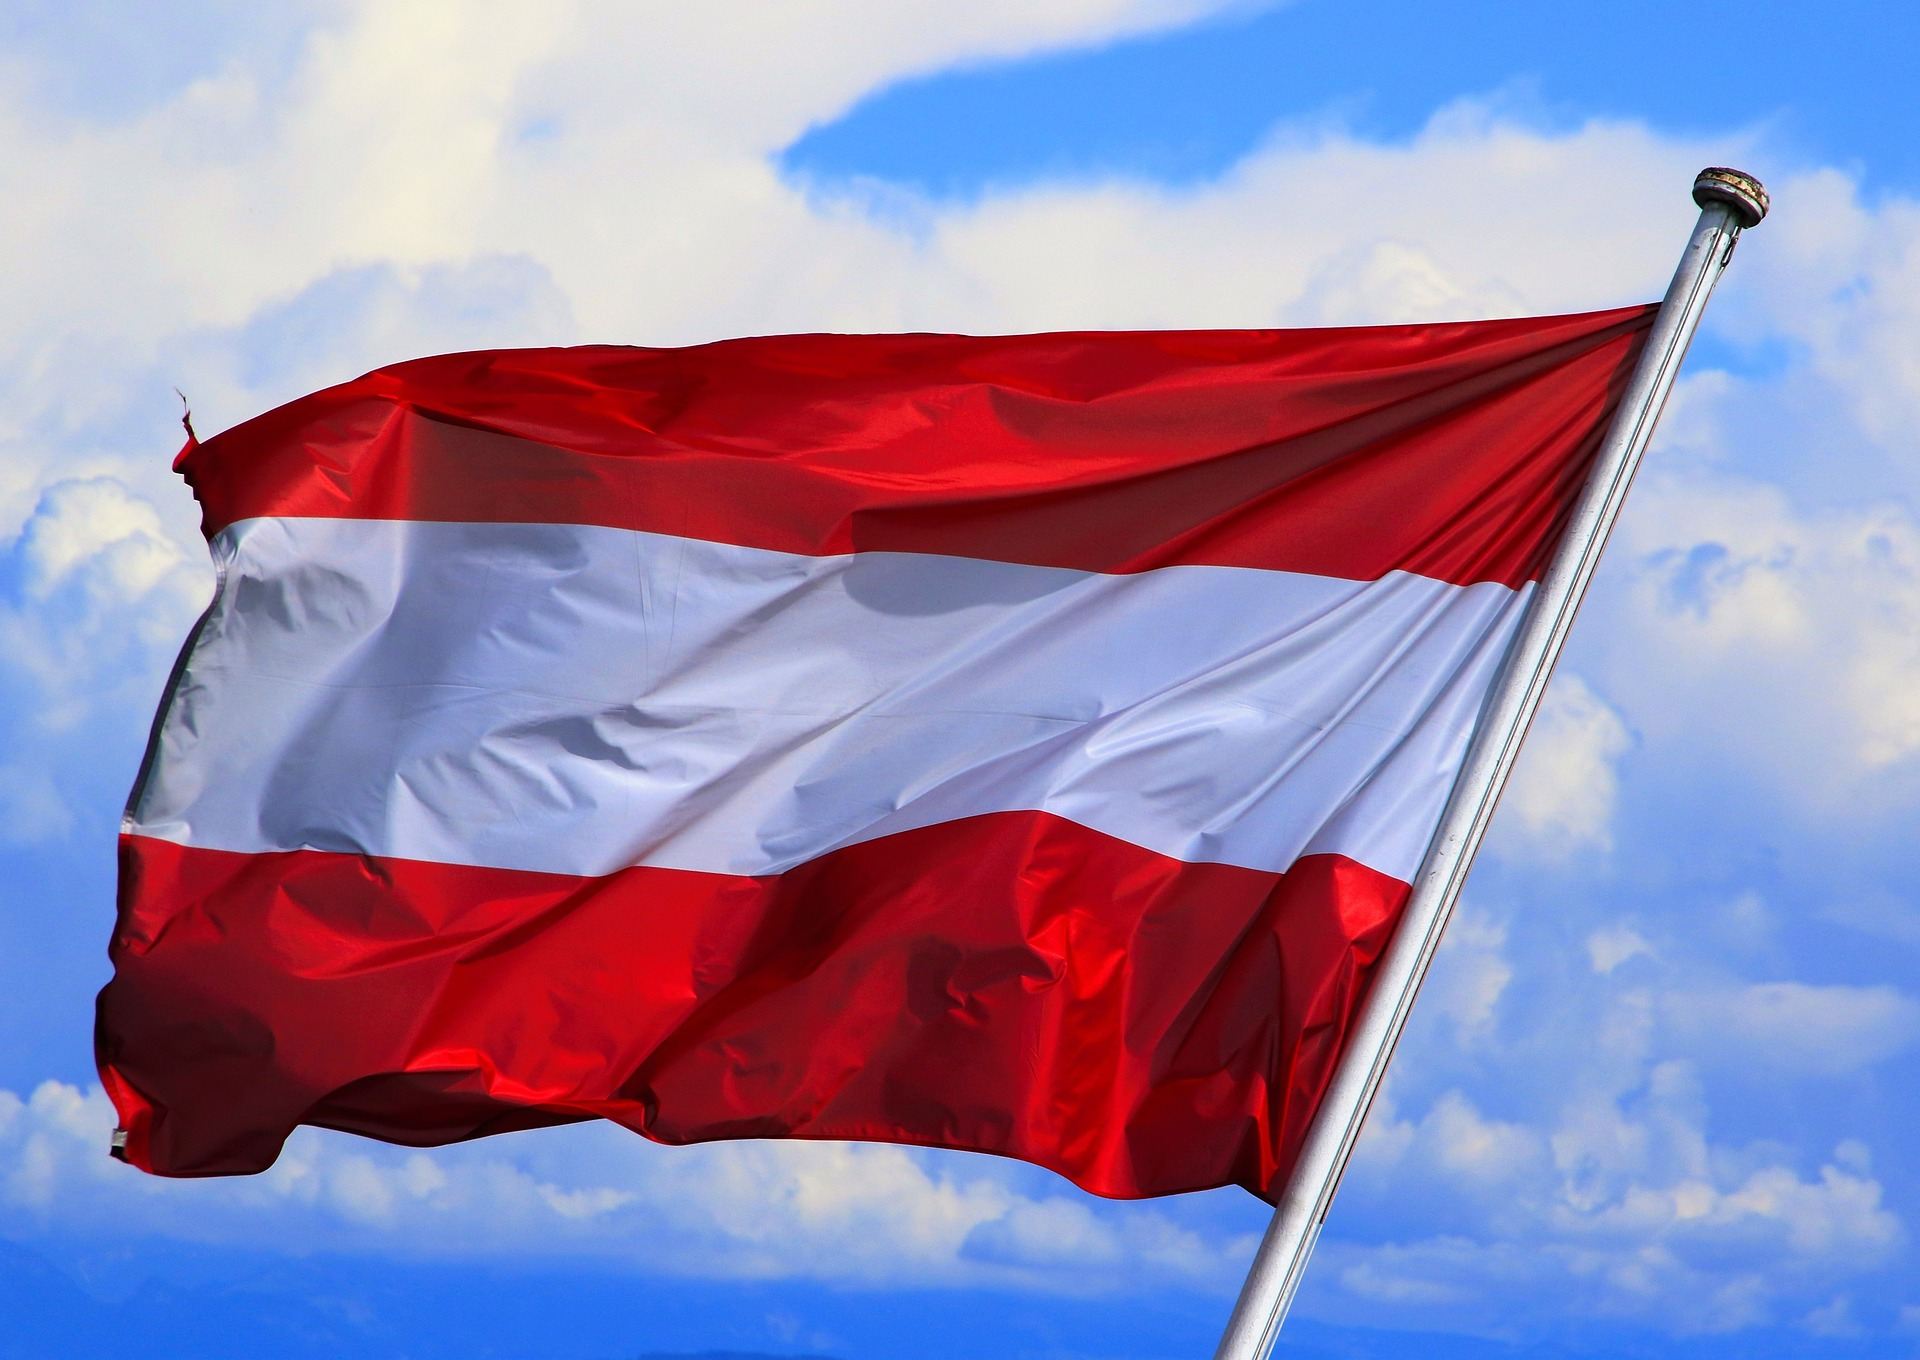 Austrijska vlada pala zbog projekta istraživačkog novinarstva?